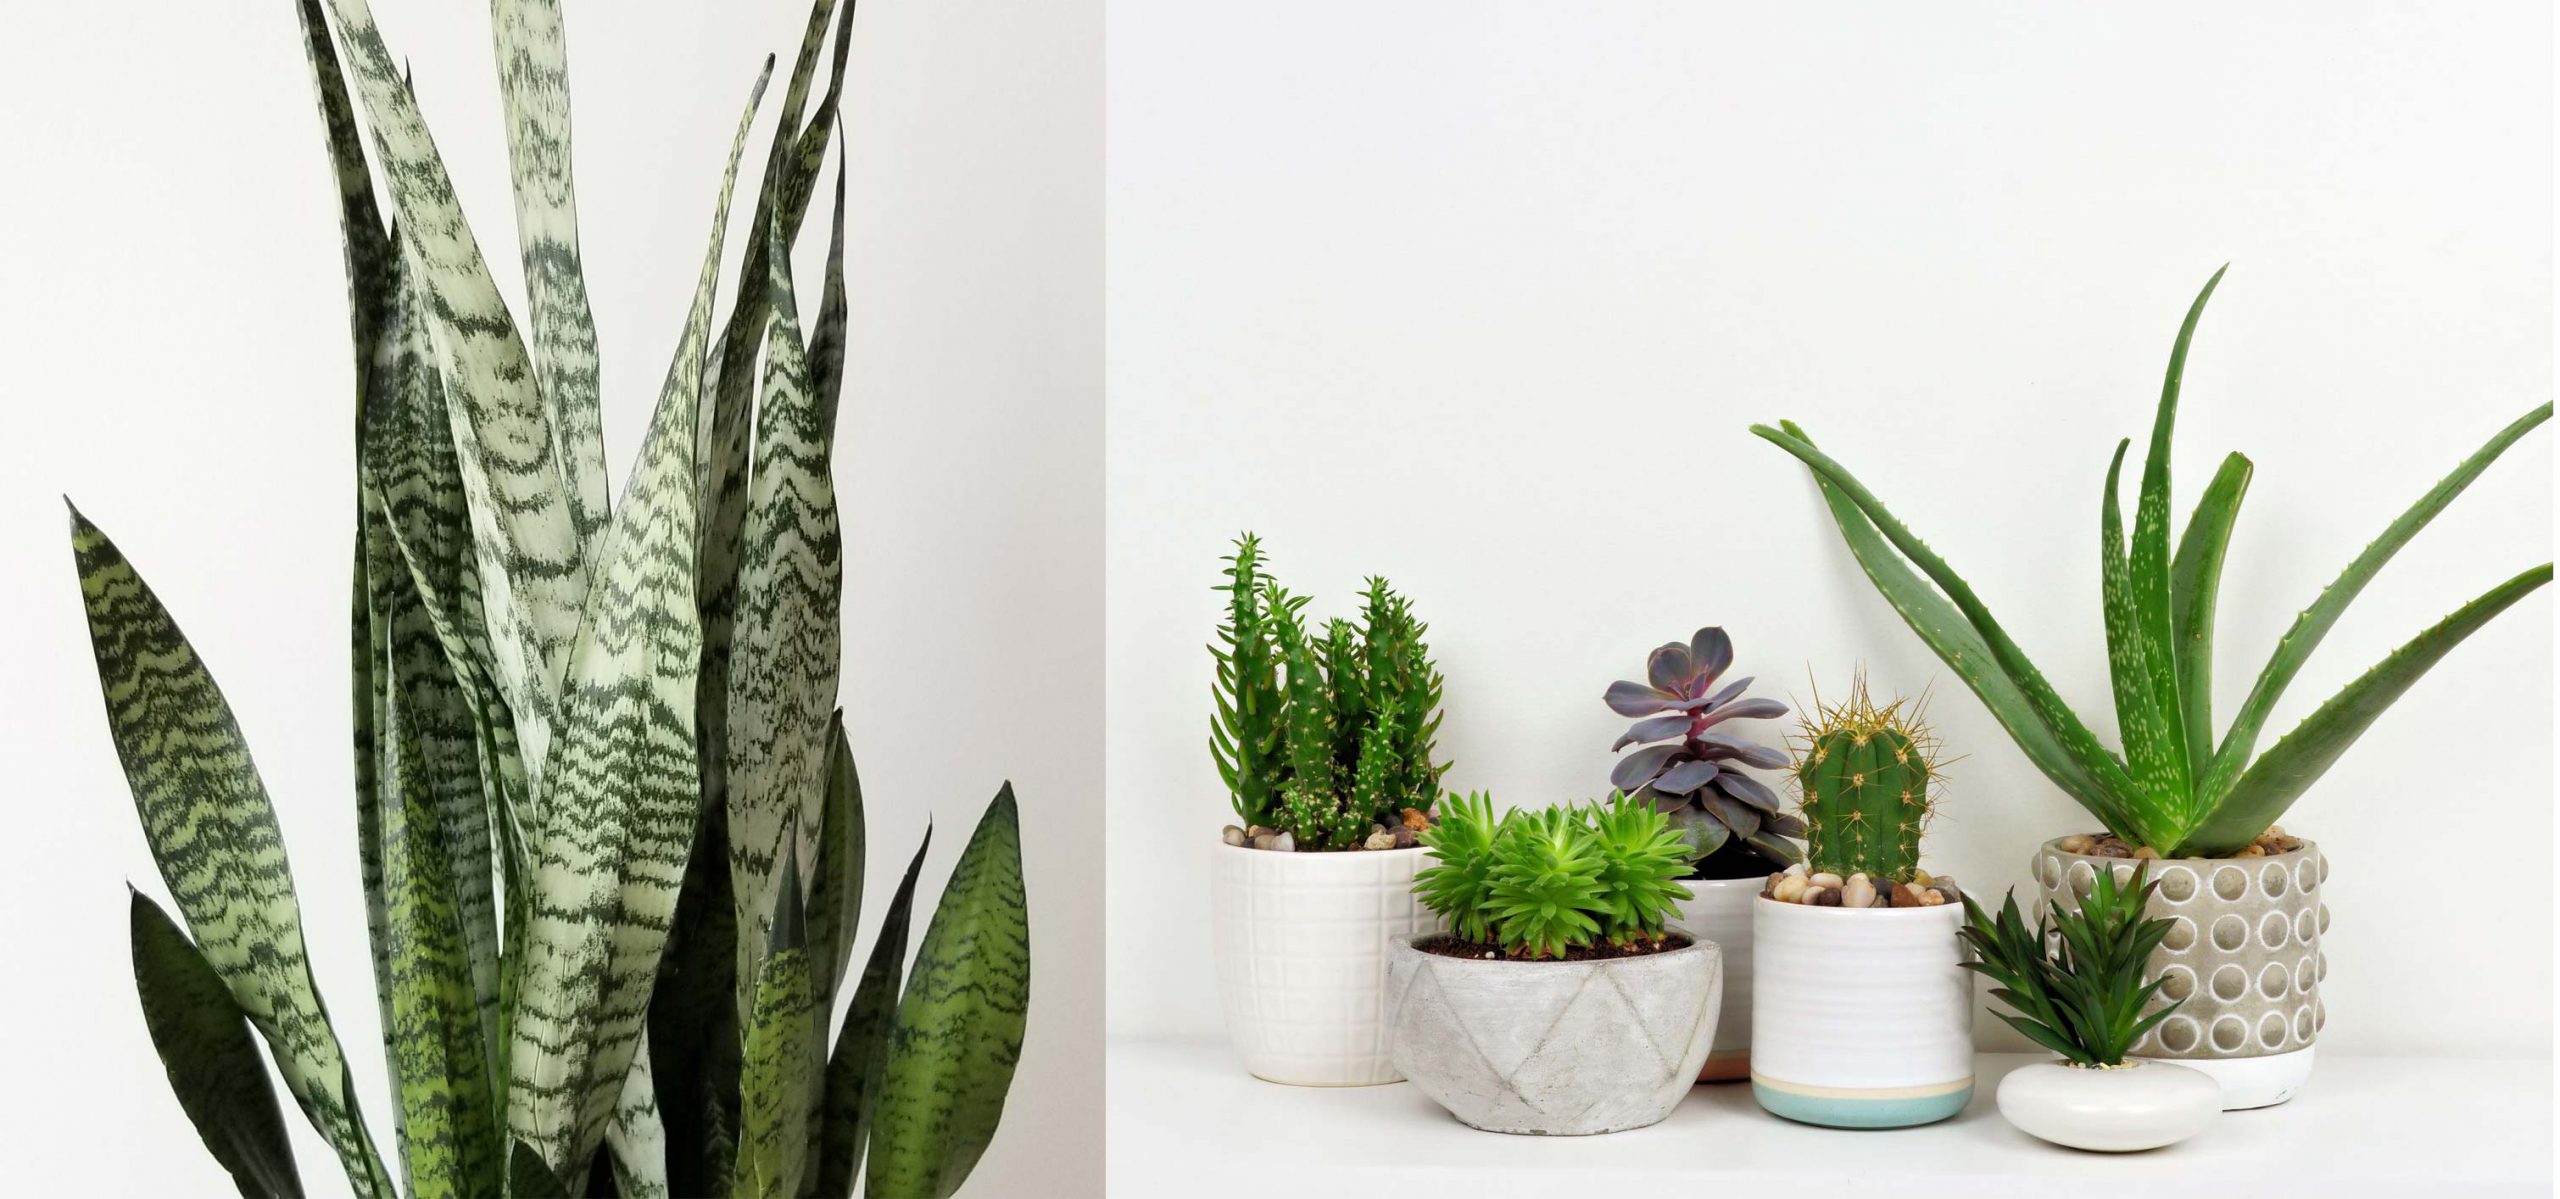 3- کاربرد و استفاده - گیاهان آپارتمانی - indoor plants - office plants - تجهیزات دکوراسیون - استفاده از گیاهان آپارتمانی - کاربرد گیاهان آپارتمانی